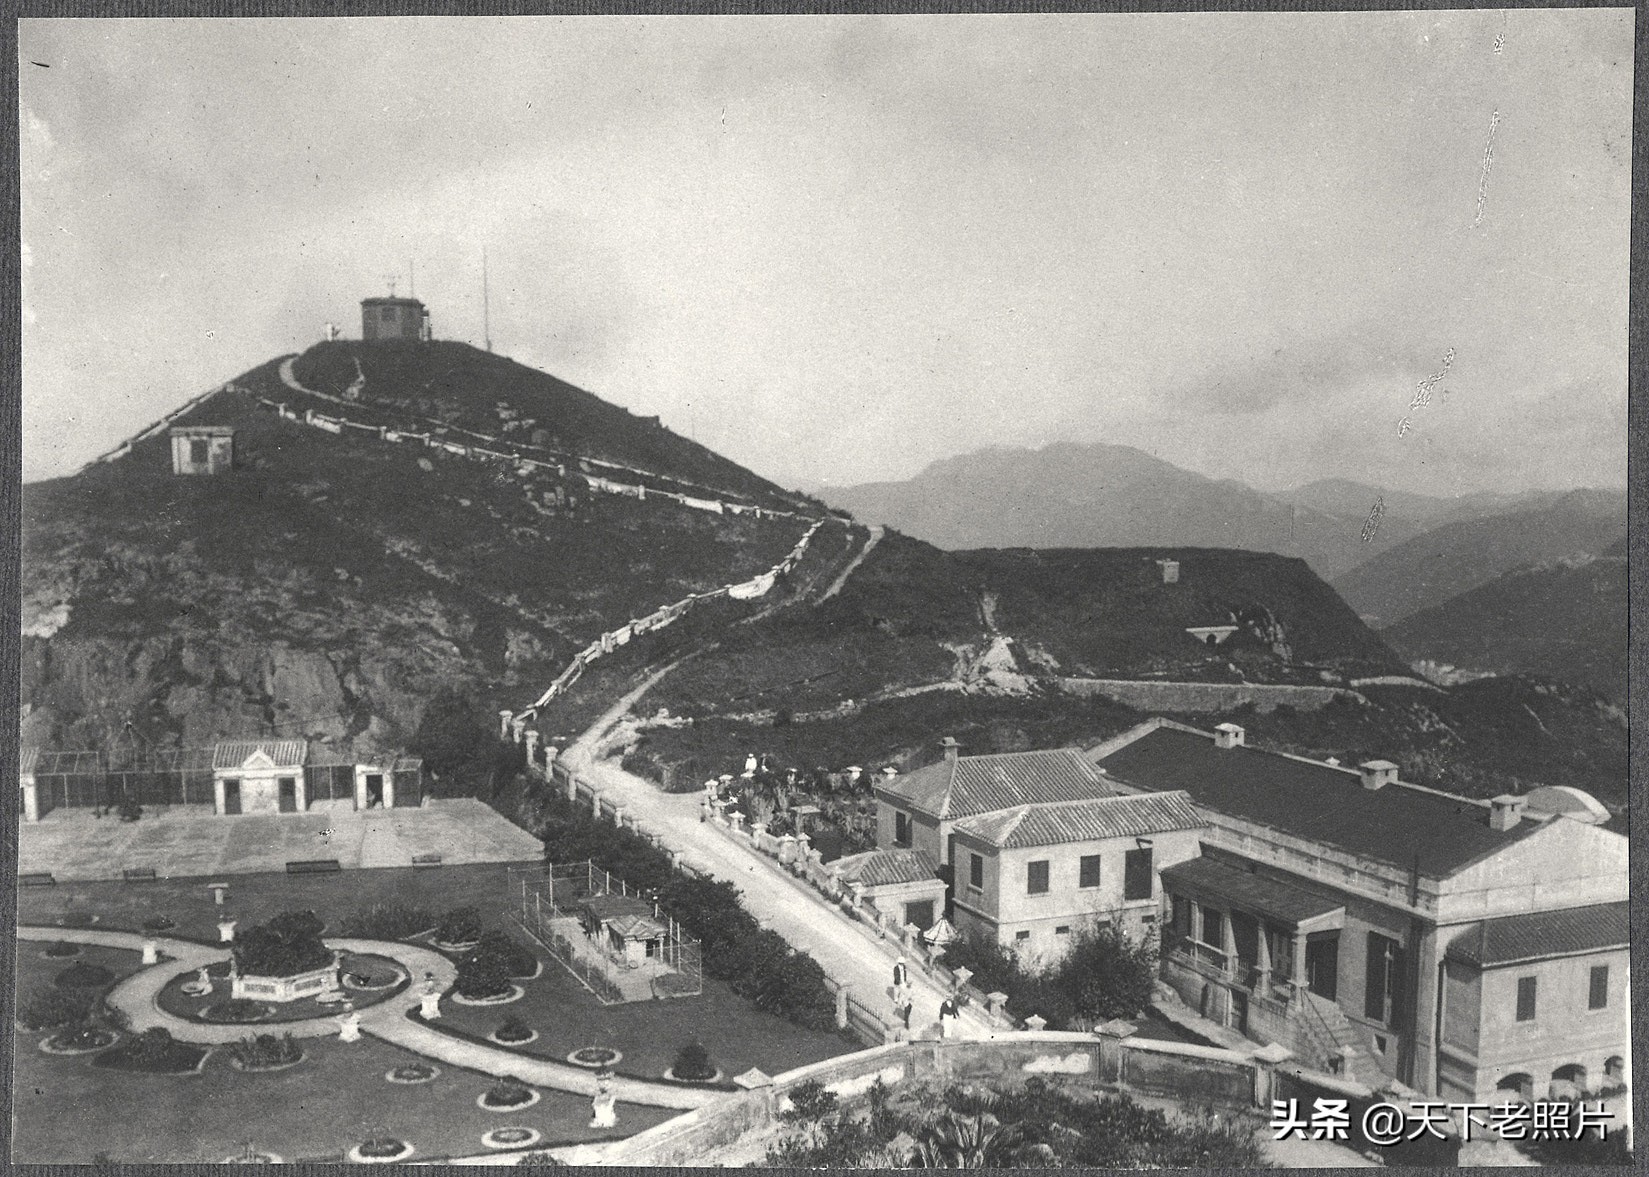 1905年的香港实拍照 美国政府代表团访华时随行拍摄